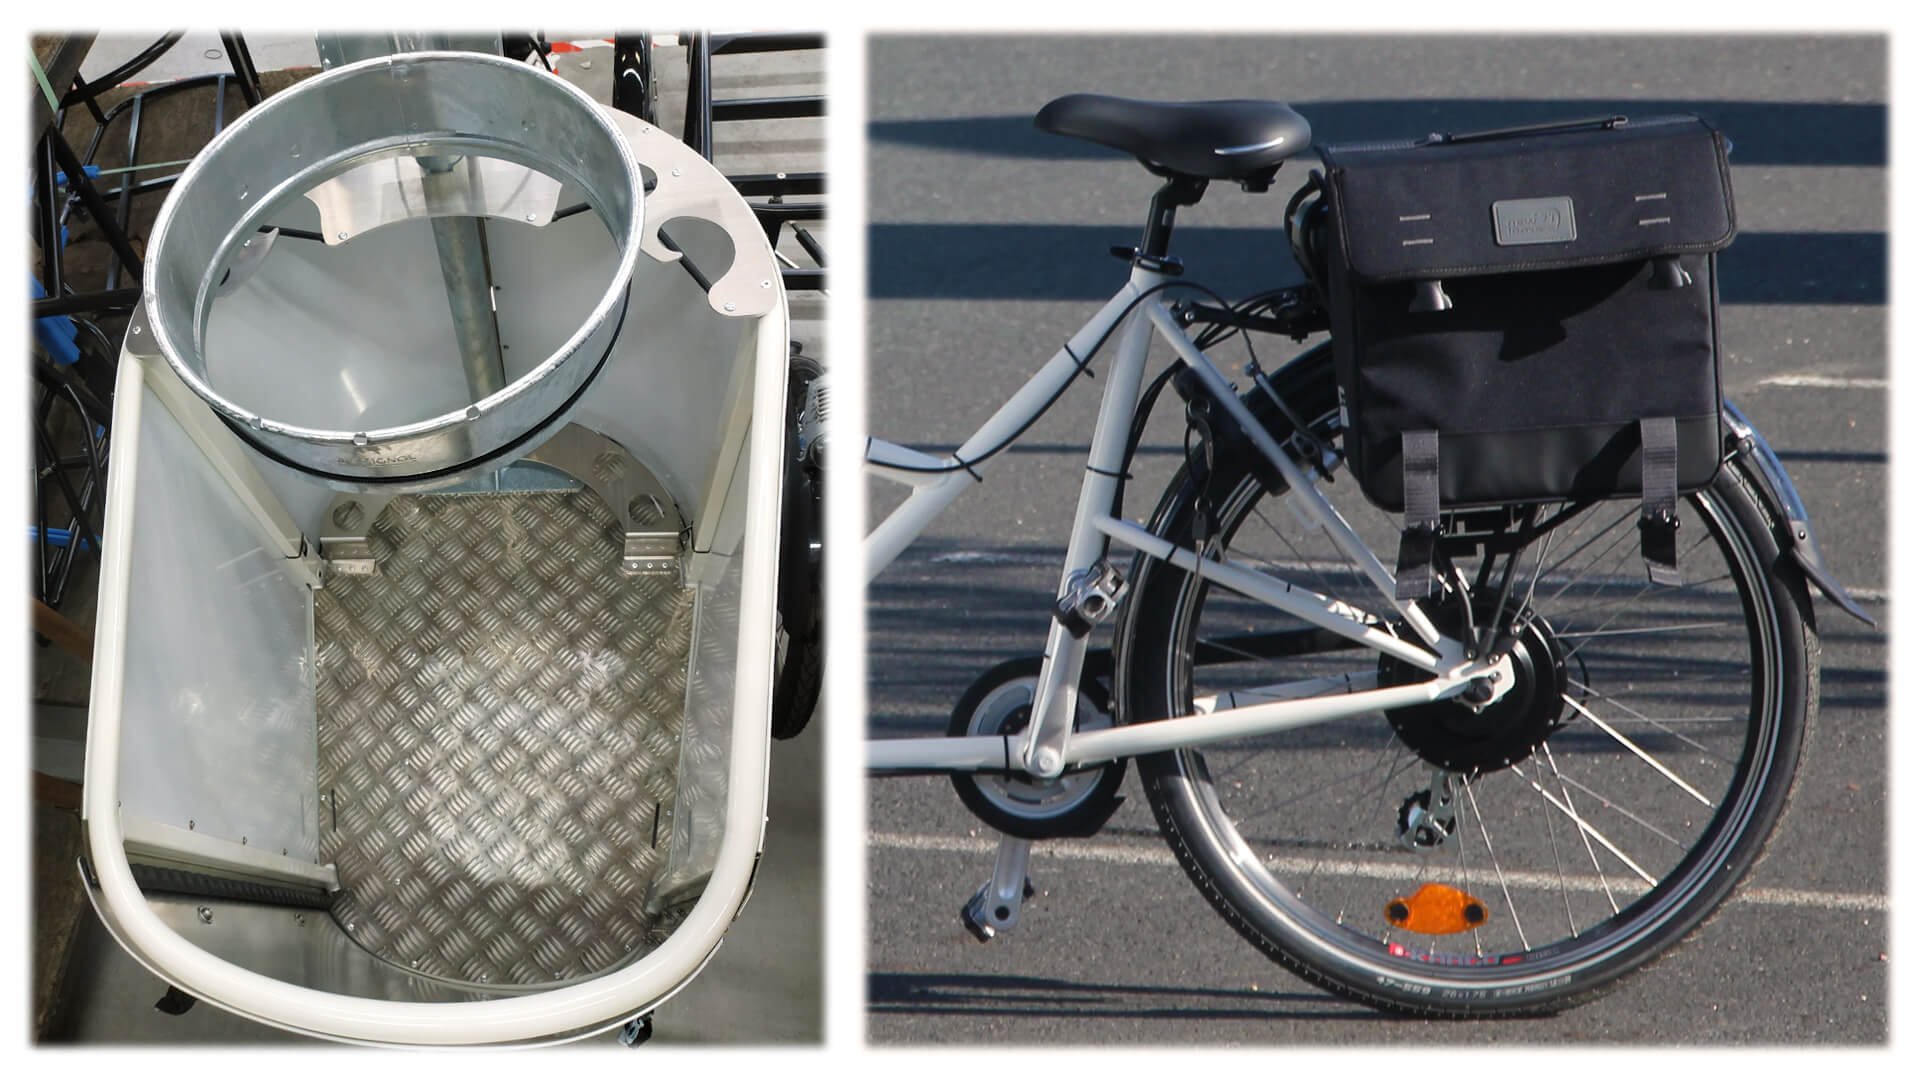 À gauche, le fond renforcé en tôle larmée de la malle, à droite la sacoche arrière incluse avec le vélo 